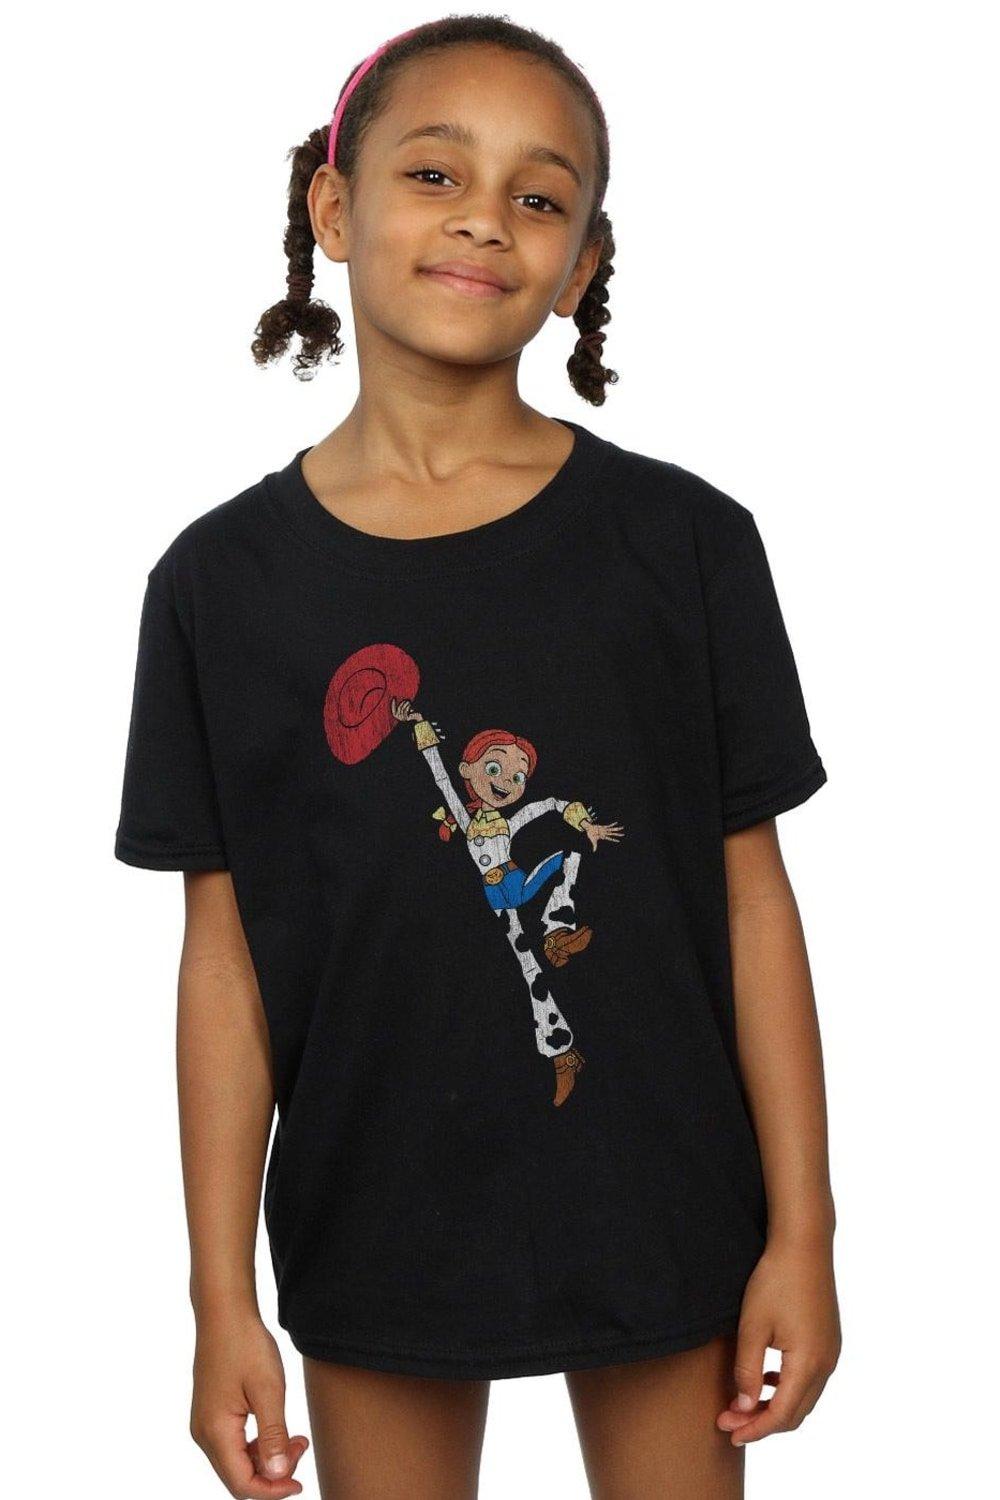 Хлопковая футболка «История игрушек 4: Джесси в прыжке» Disney, черный